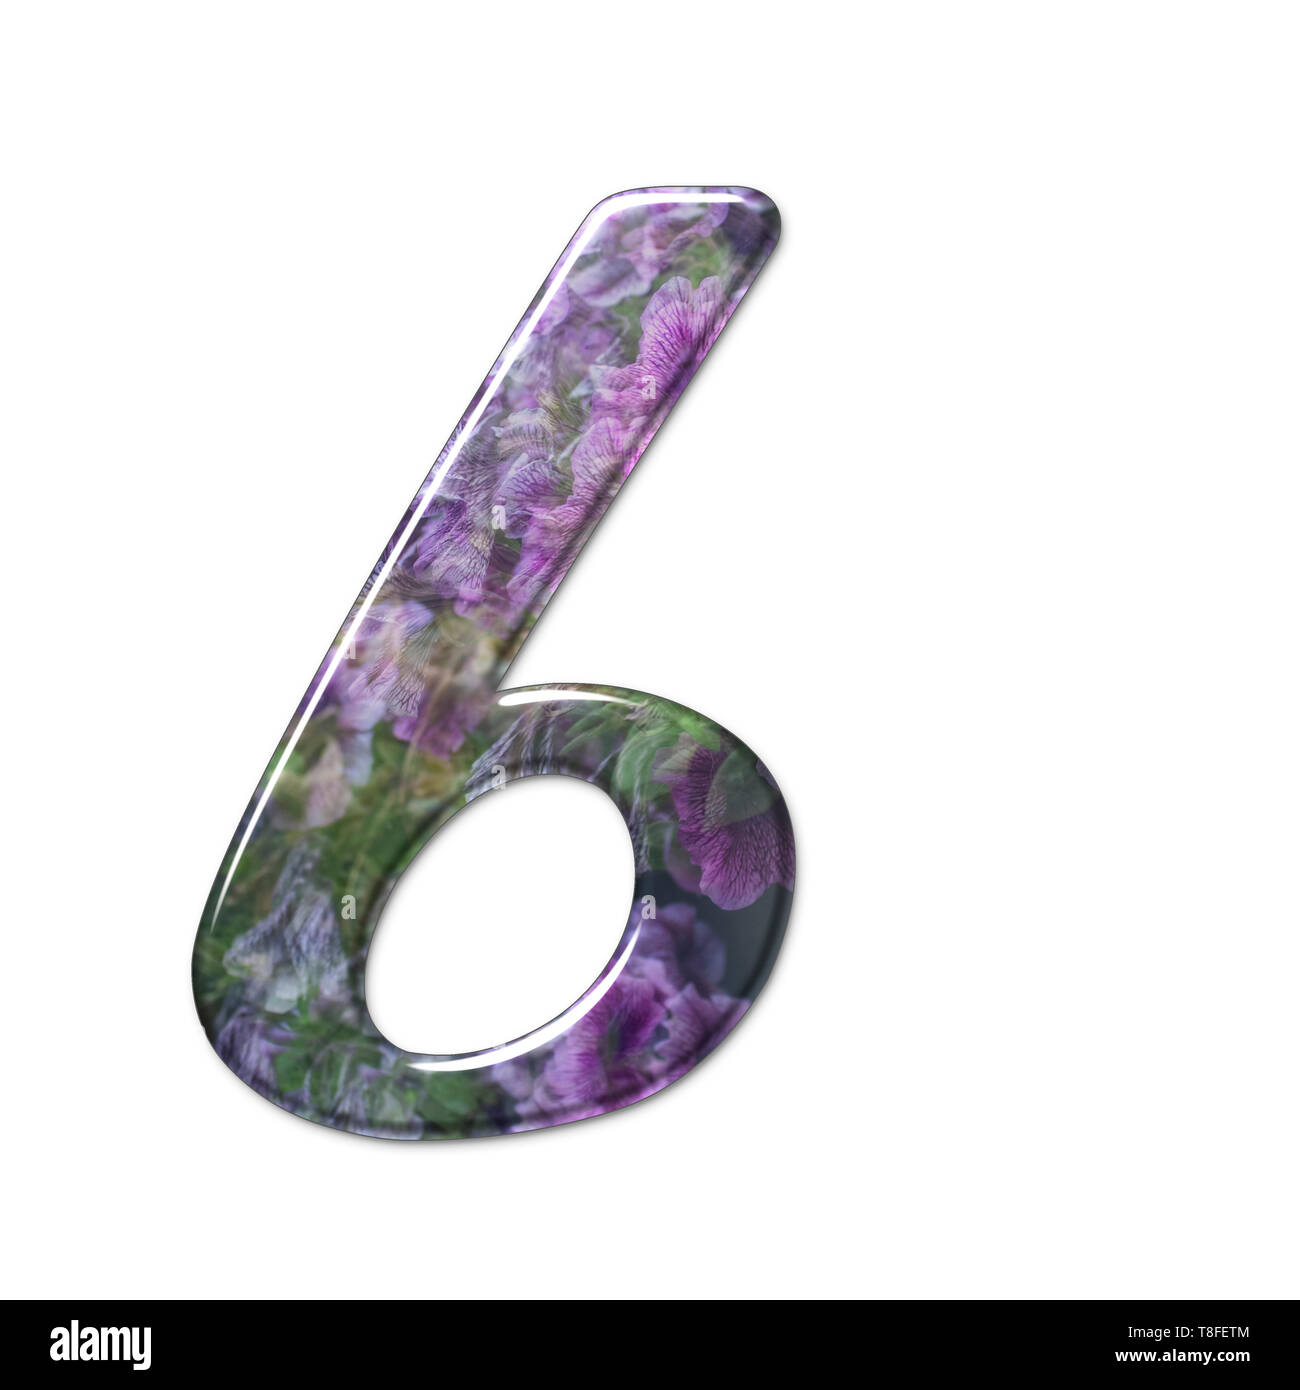 El número seis forma parte de un conjunto de letras, números y símbolos del alfabeto en 3D realizado con una imagen floral sobre fondo blanco. Foto de stock